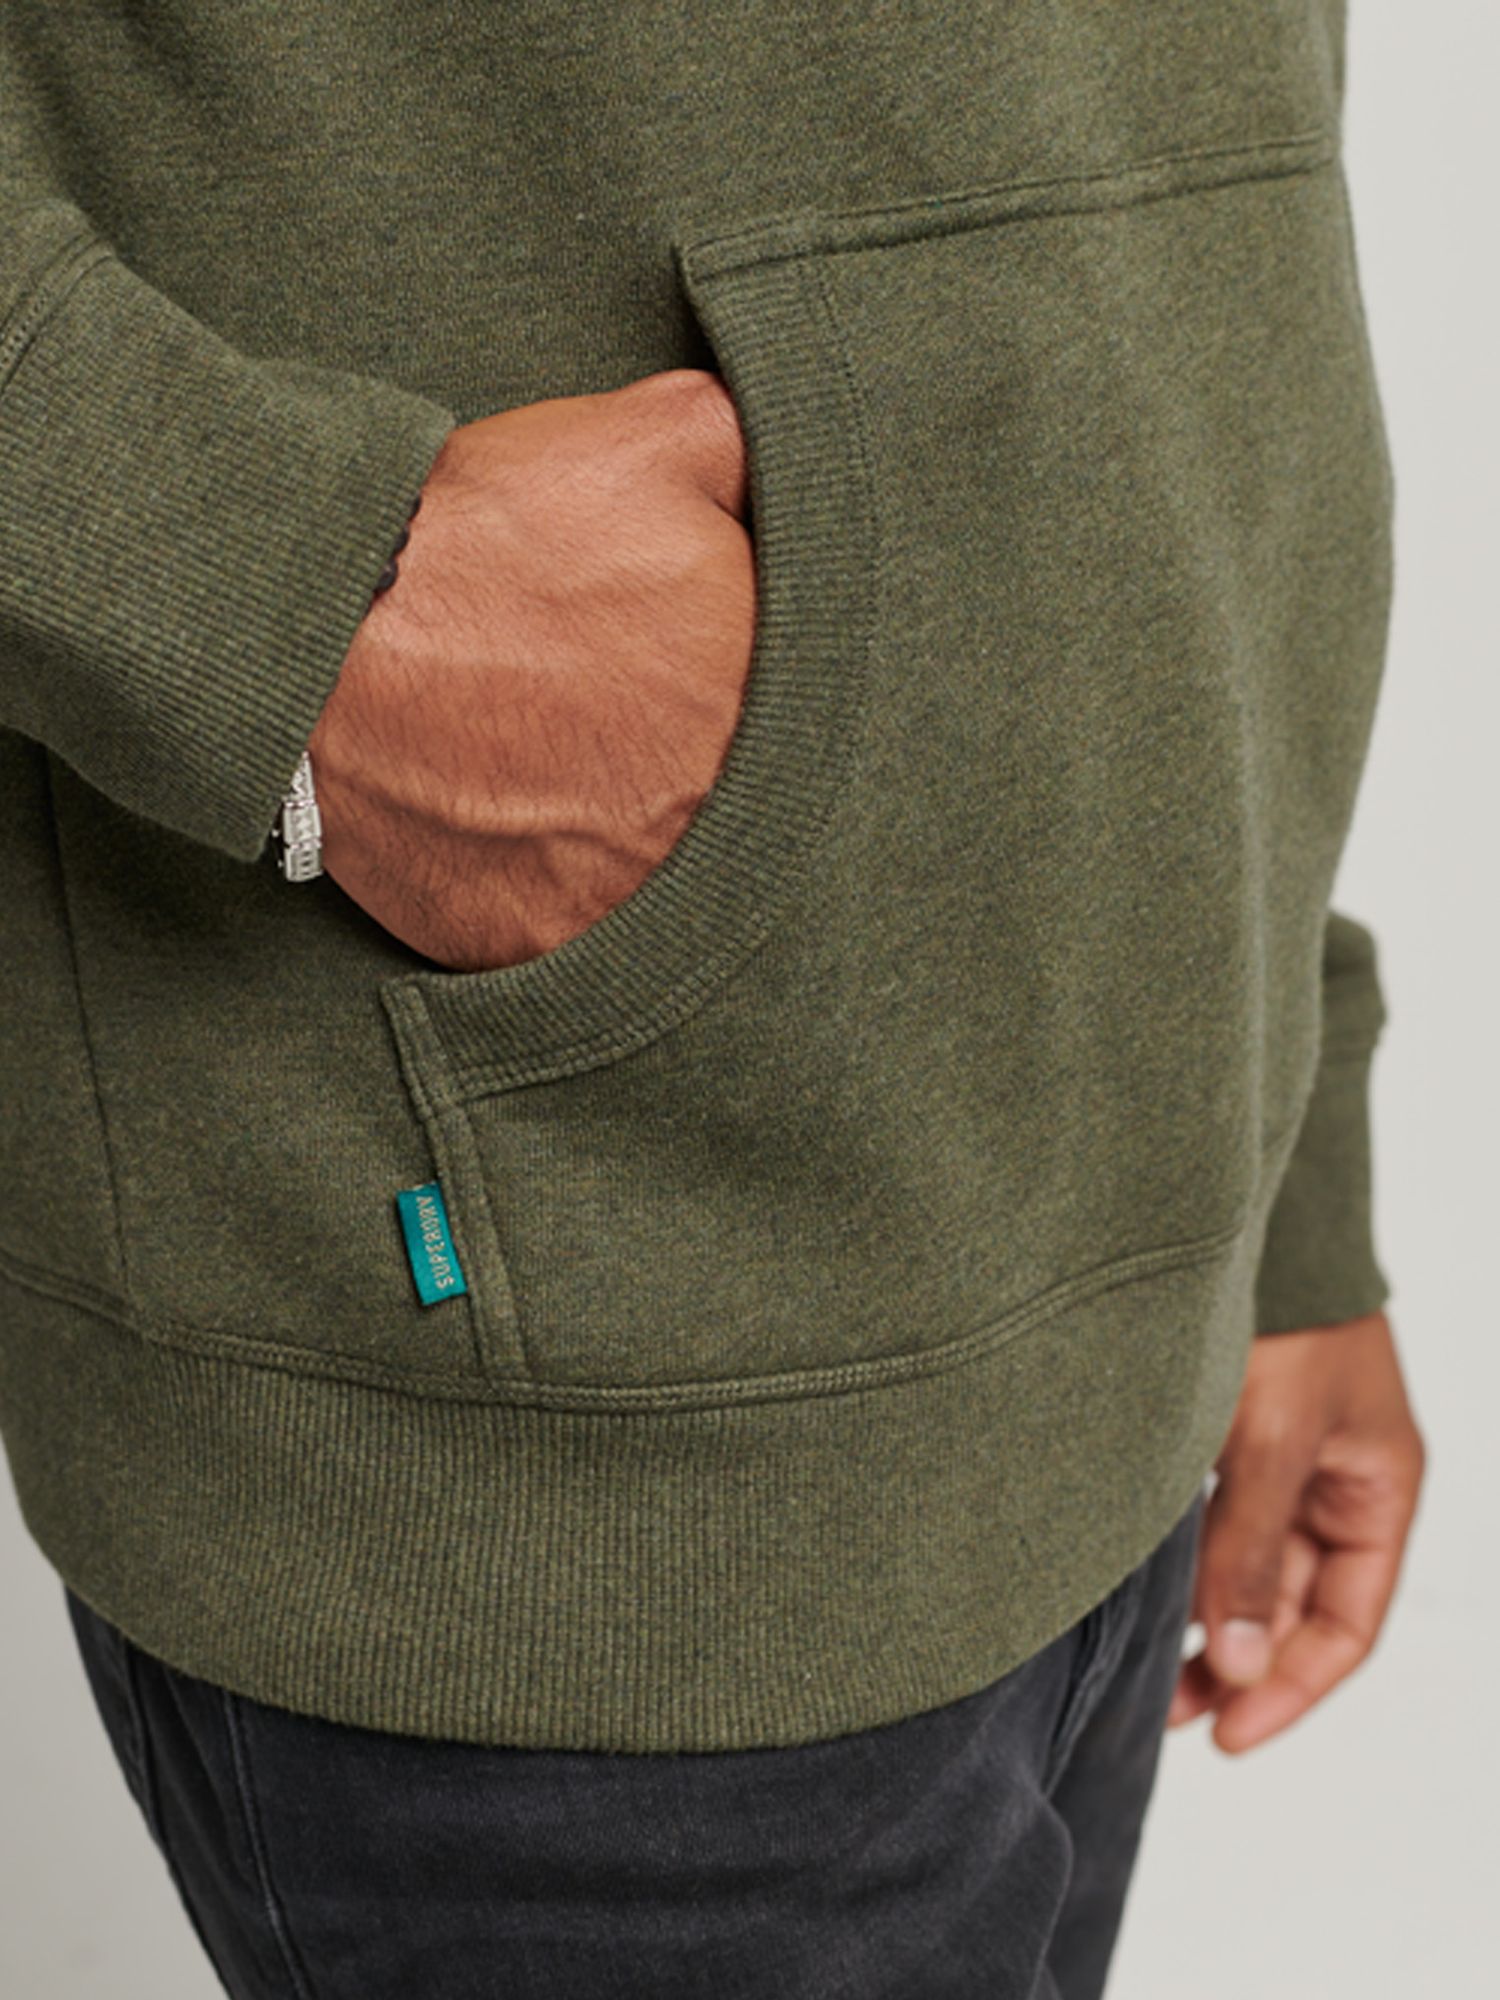 Buy Olive Green Sweatshirt & Hoodies for Men by SUPERDRY Online